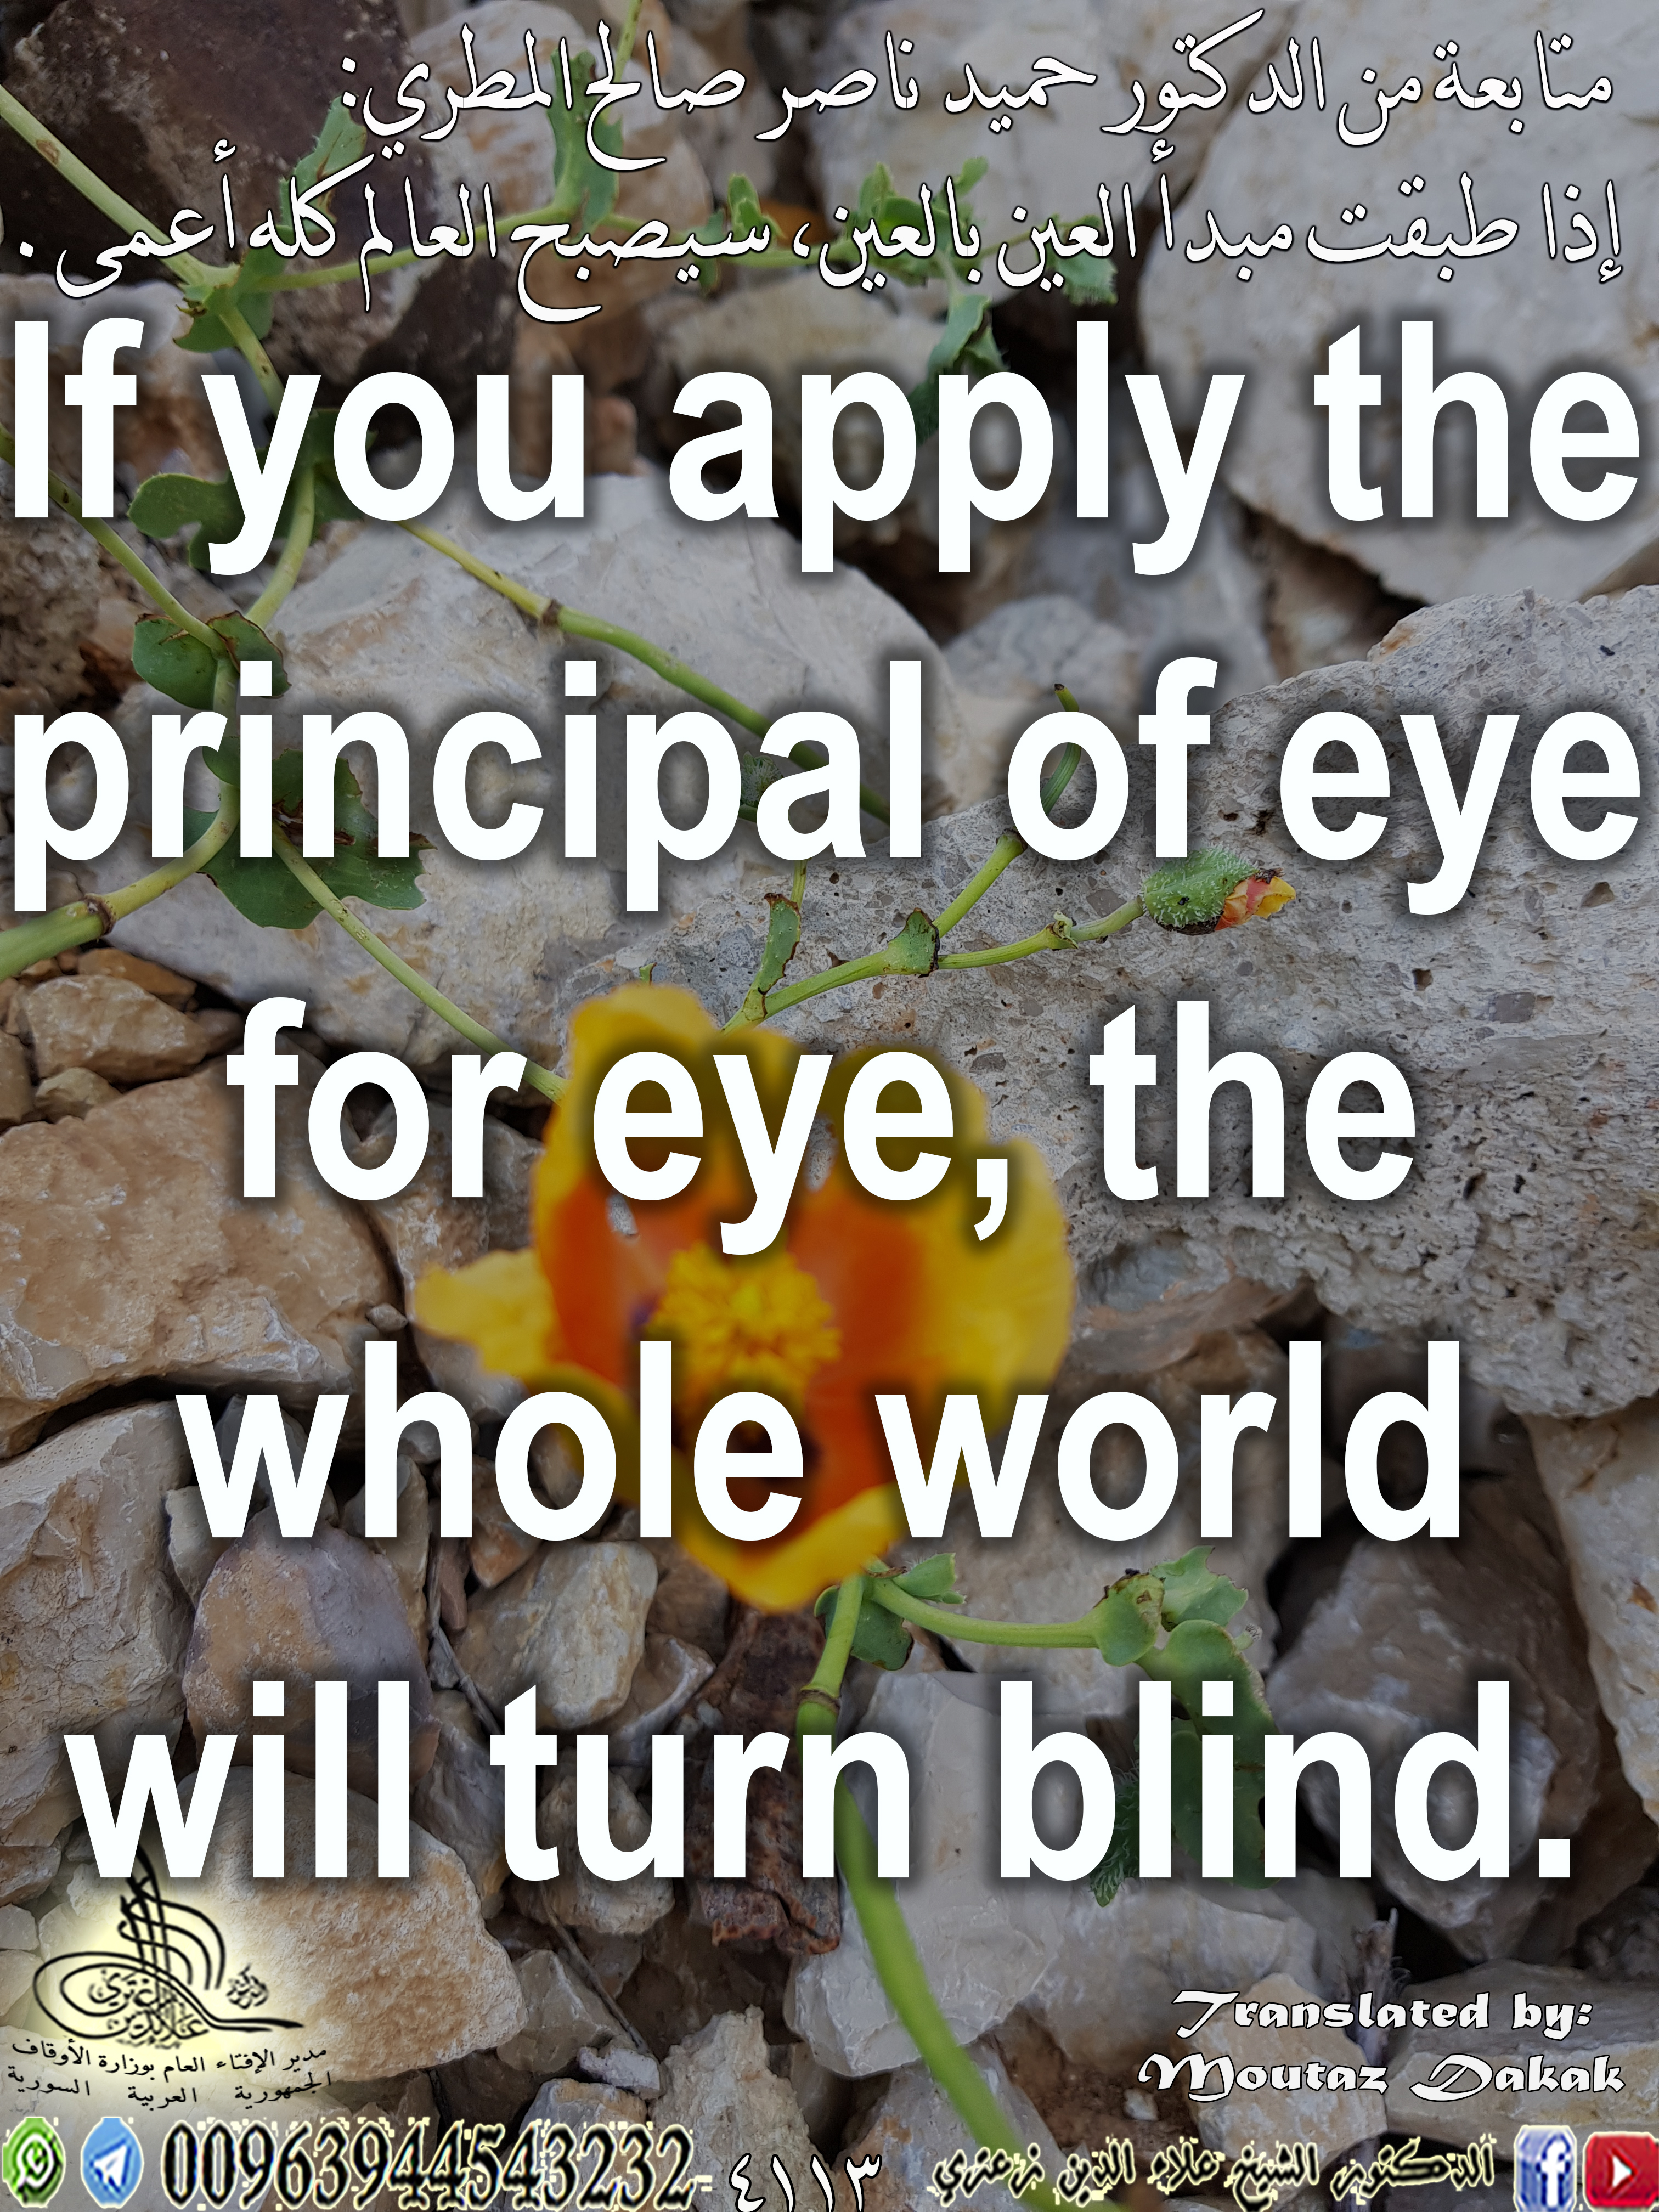 إذا طبقت مبدأ العين بالعين، سيصبح العالم كله أعمى.